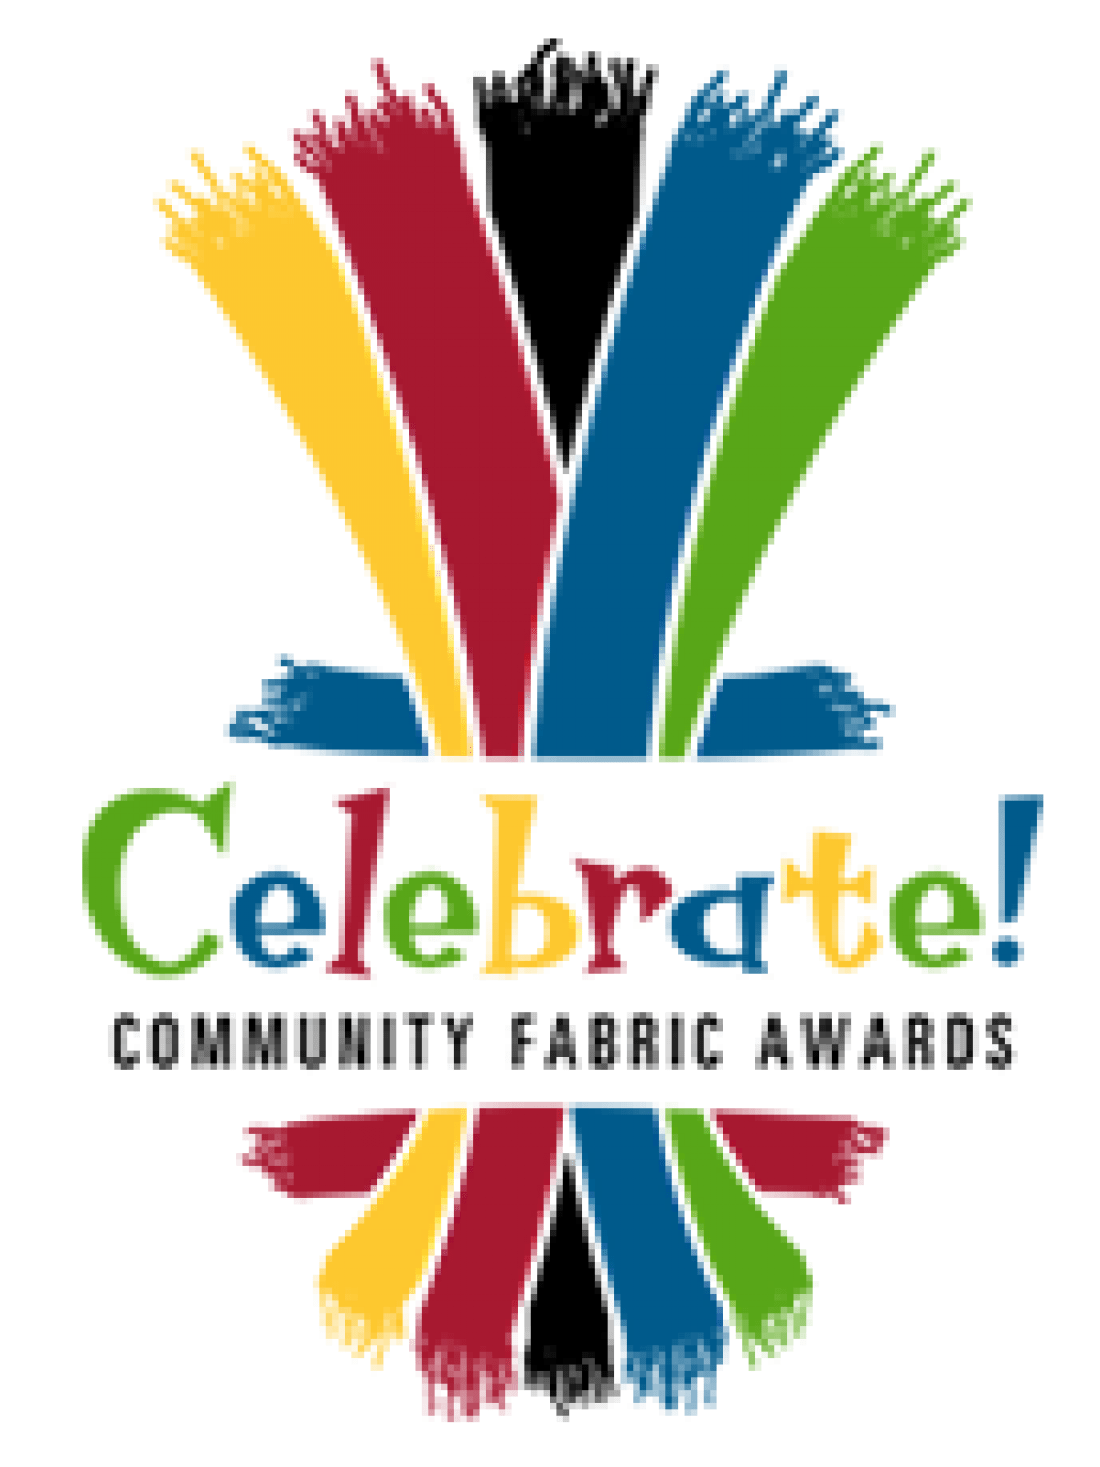 Community Fabric Awards logo